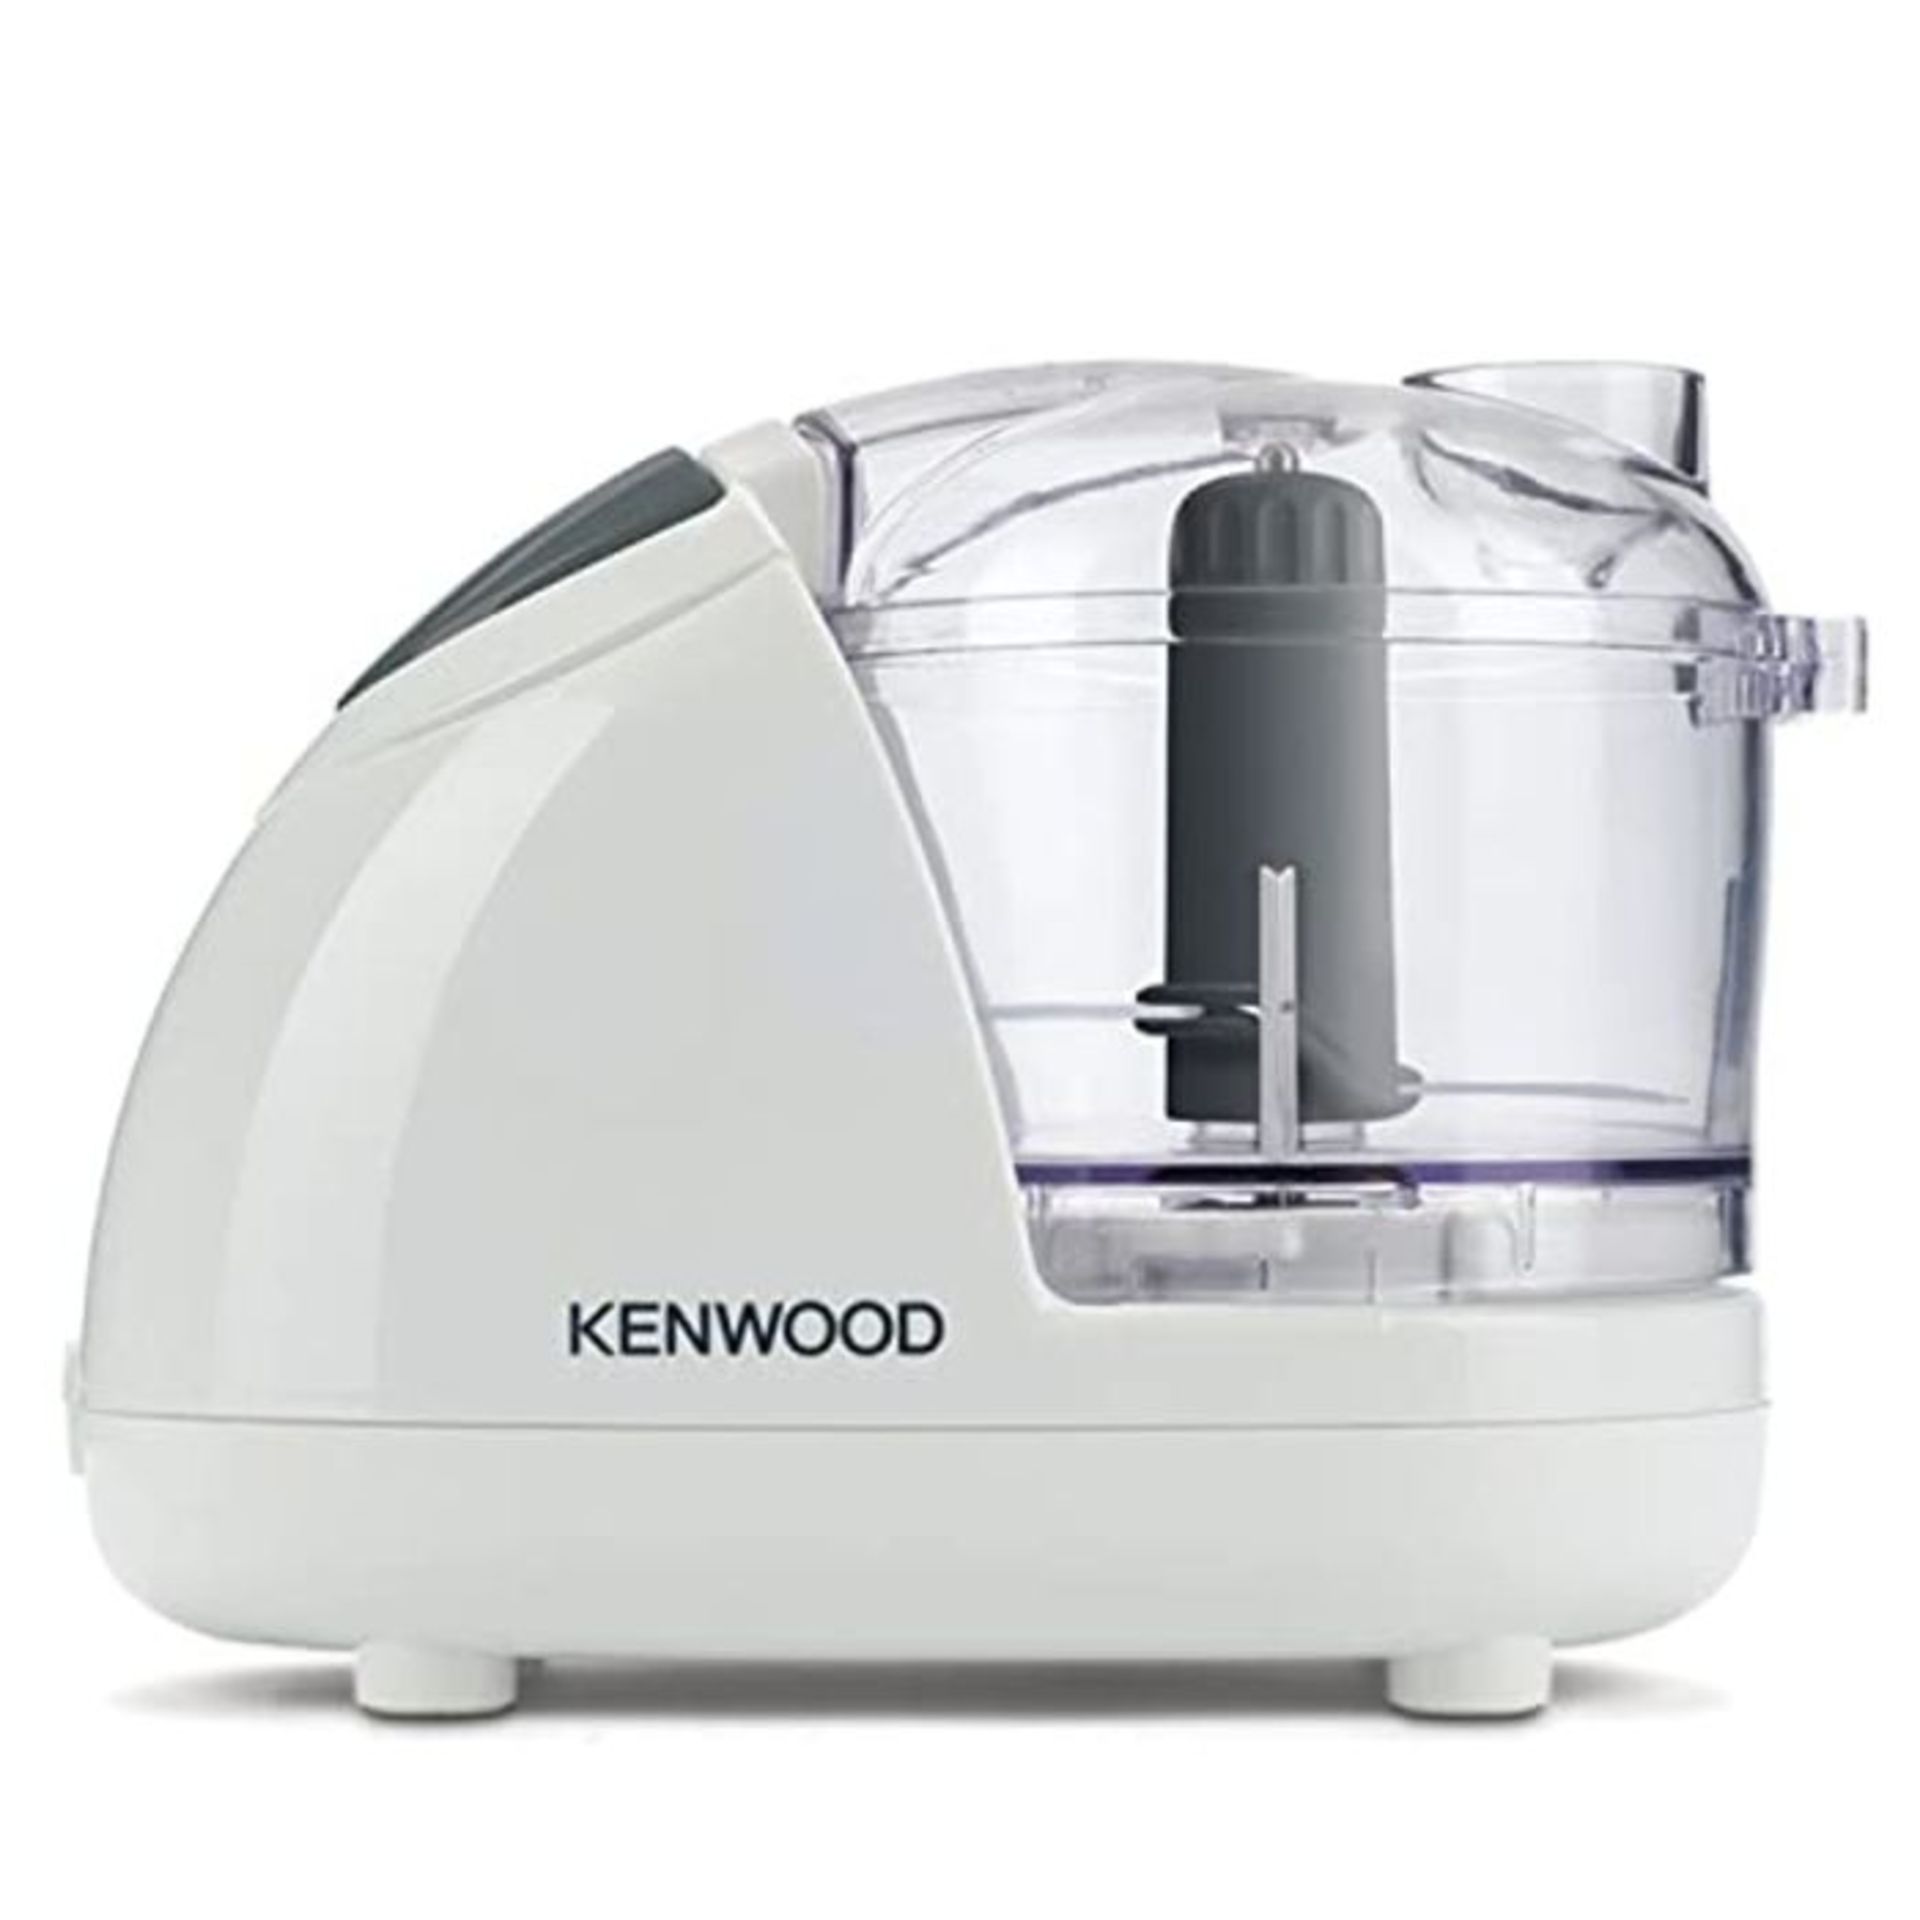 Kenwood Mini Chopper, 0.35 Litre Dishwasher Safe Bowl, 2 Speeds, Rubber Feet for Food